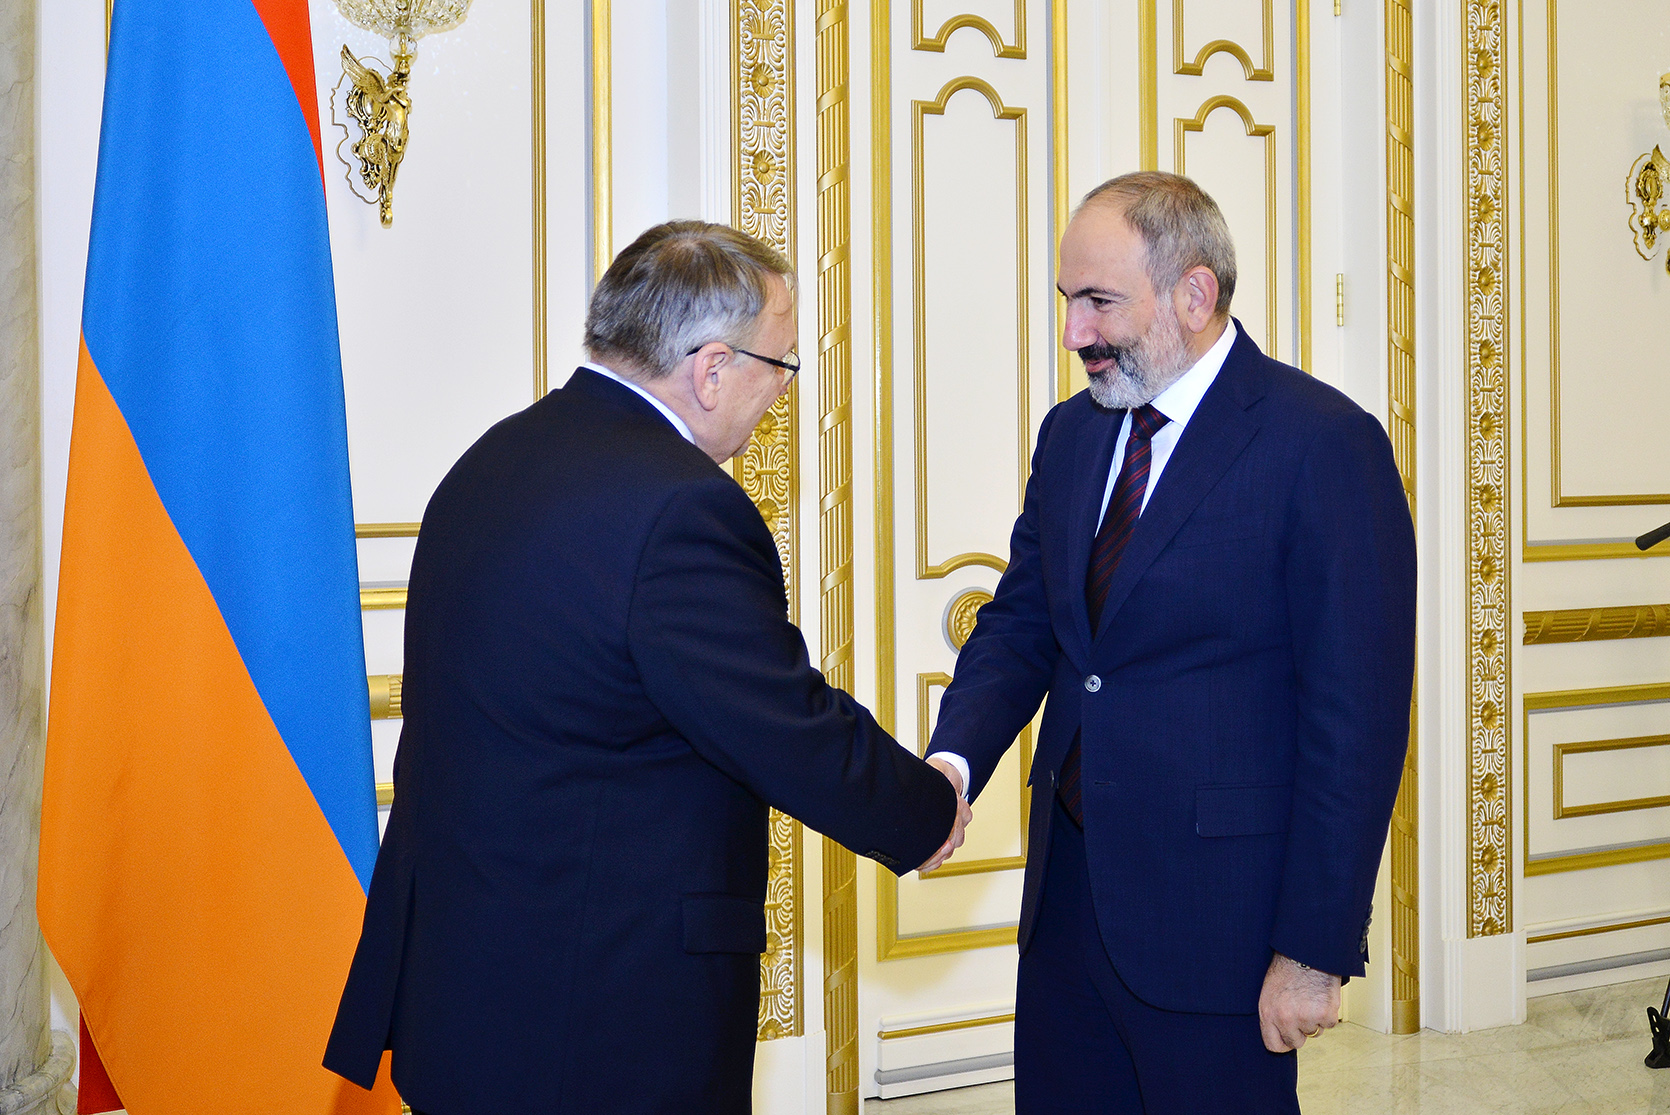 Чехия поддерживает демократические реформы в Армении: посол Чехии на приеме у премьер-министра